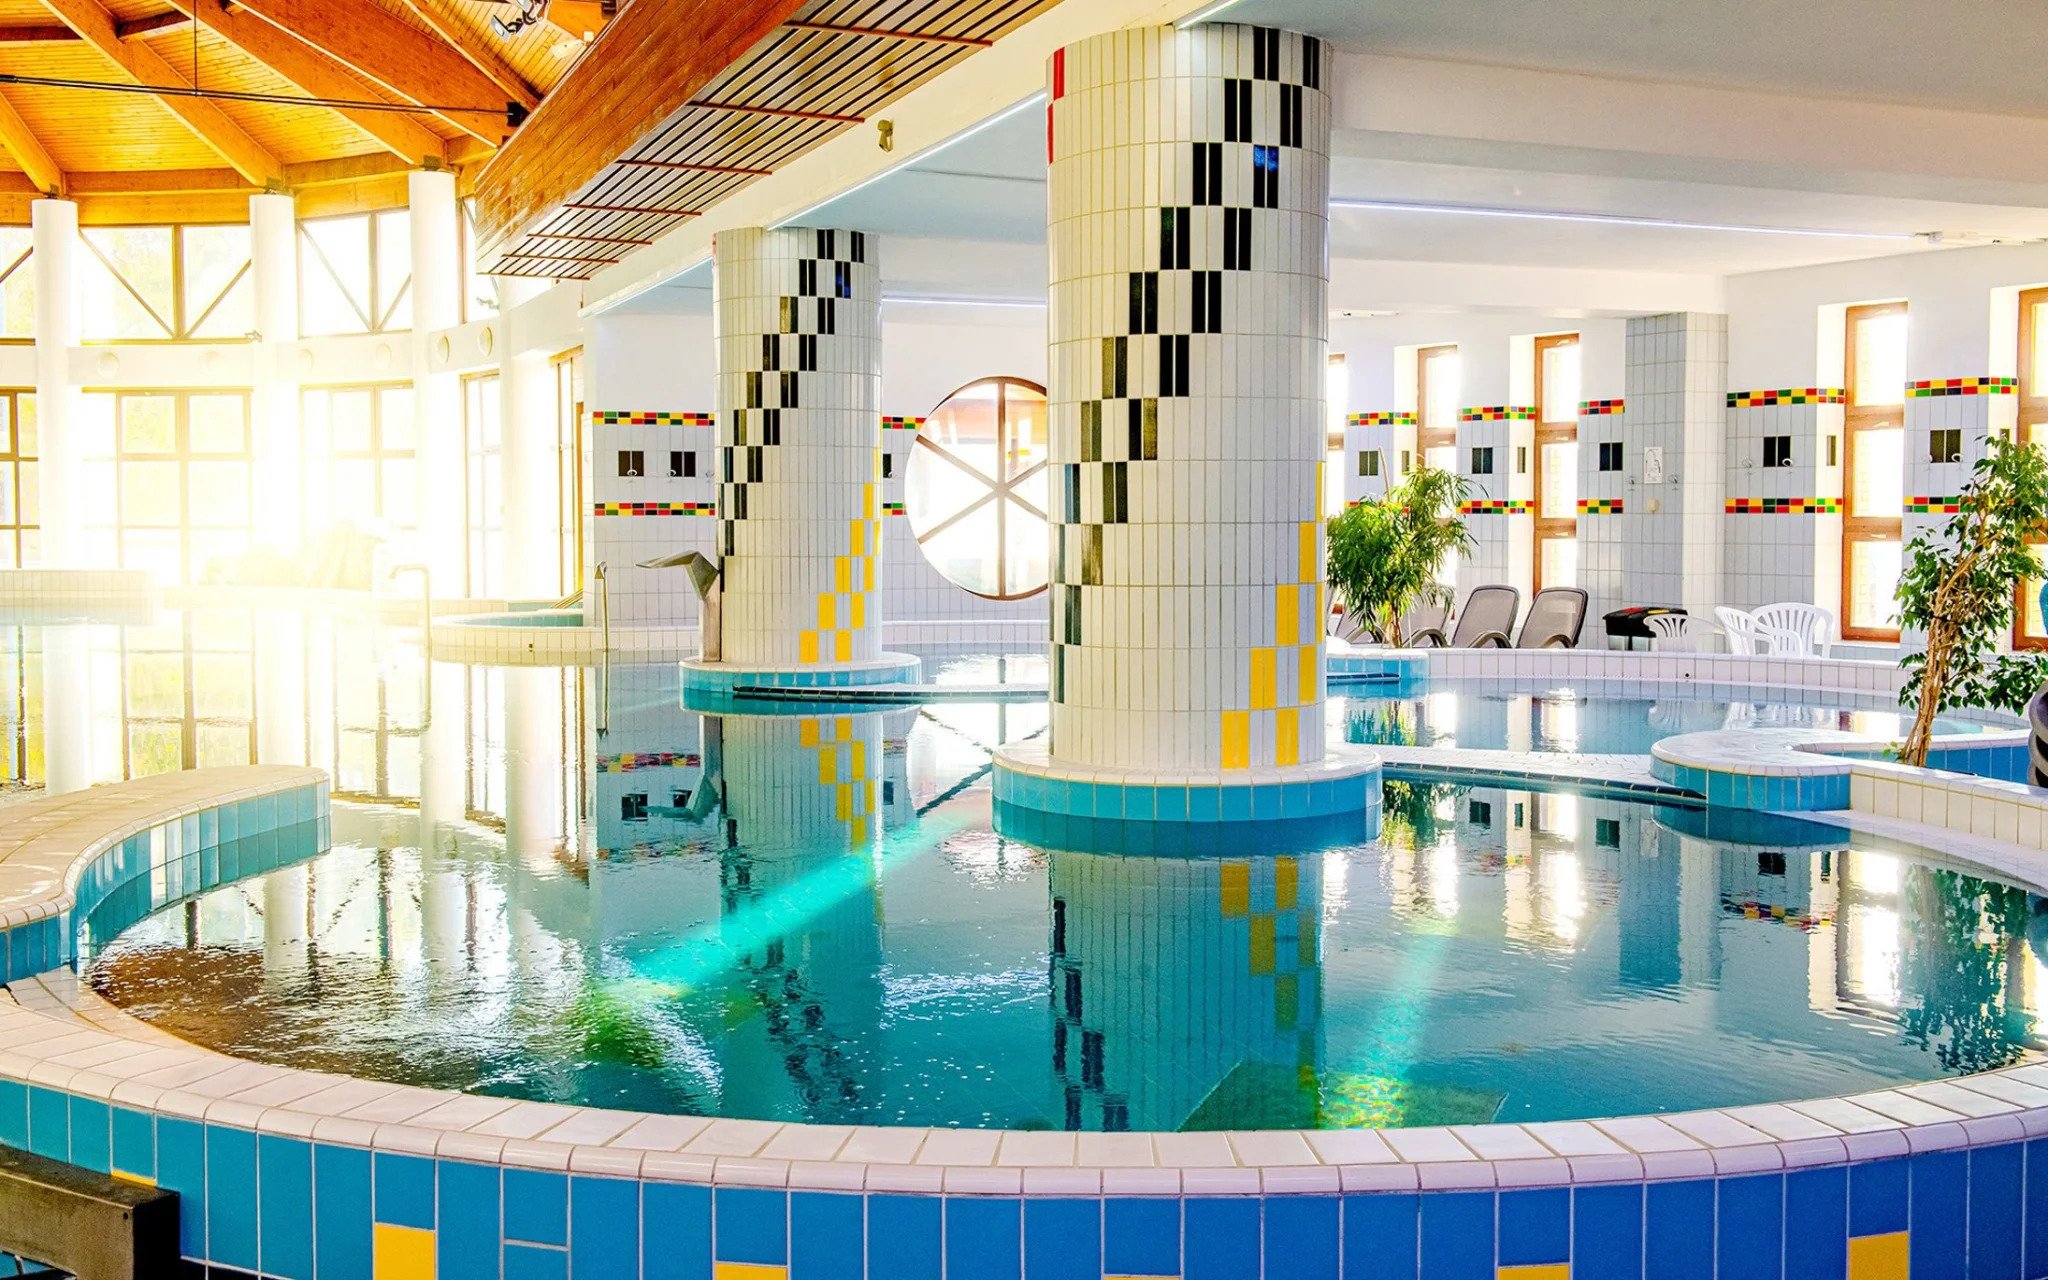 Maďarsko: Zalakaros v Hoteli Fürdő *** s polpenziou, termálnymi kúpeľmi, bazénmi, saunami a vodnými atrakciami<br/>Fürdő Hotel Zalakaros ***, Termál út 1., Zalakaros 8749, hotel@zkf.hu